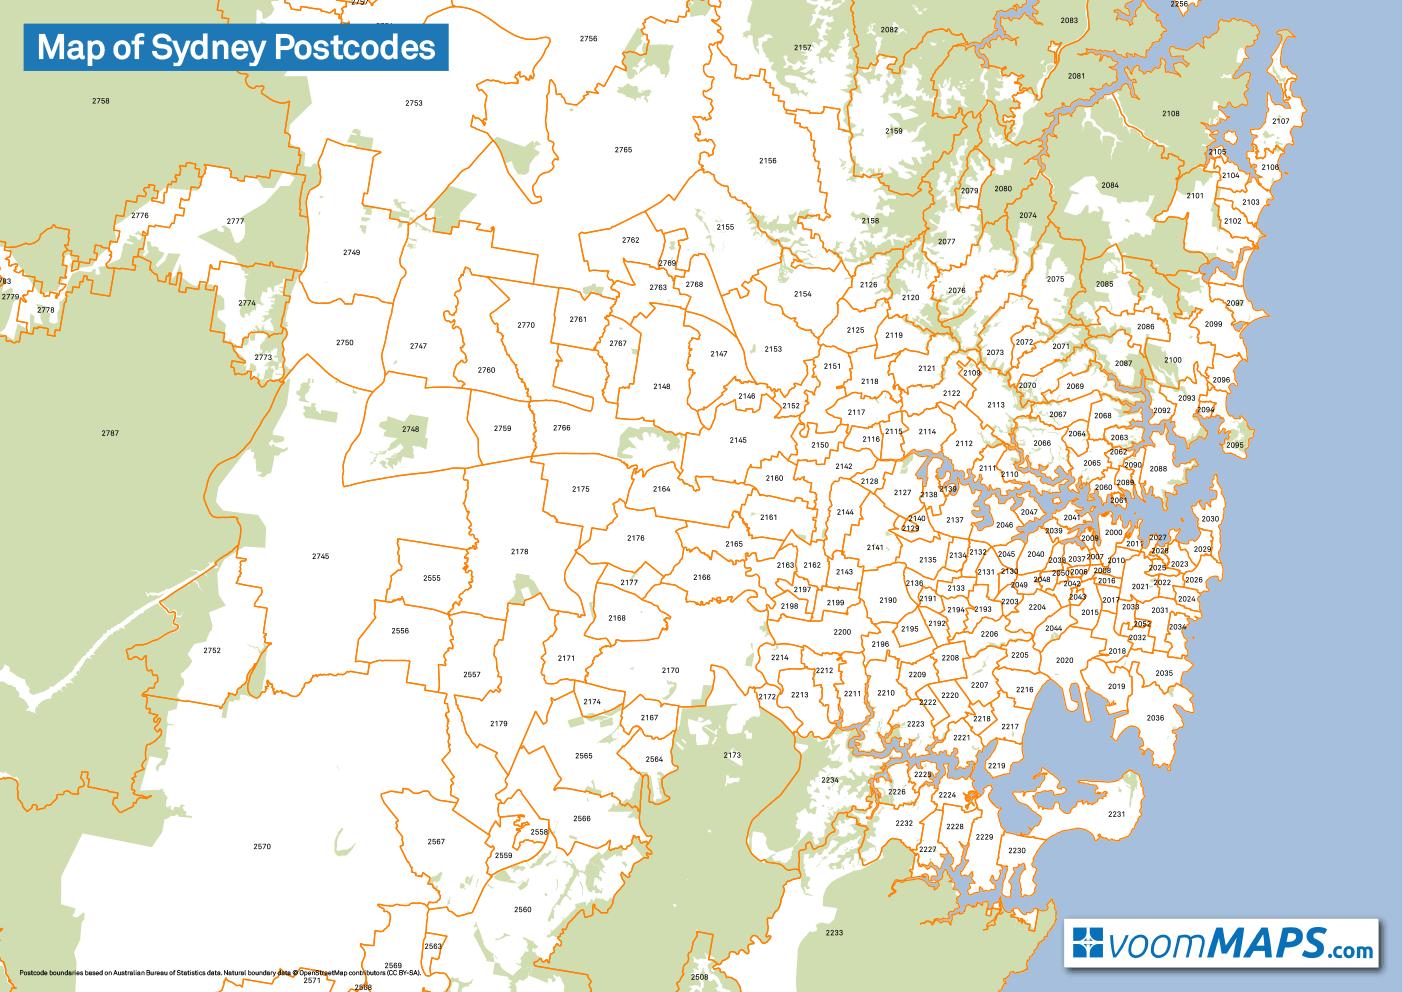 Sydney postcode map - Map of sydney postcodes (Australia)